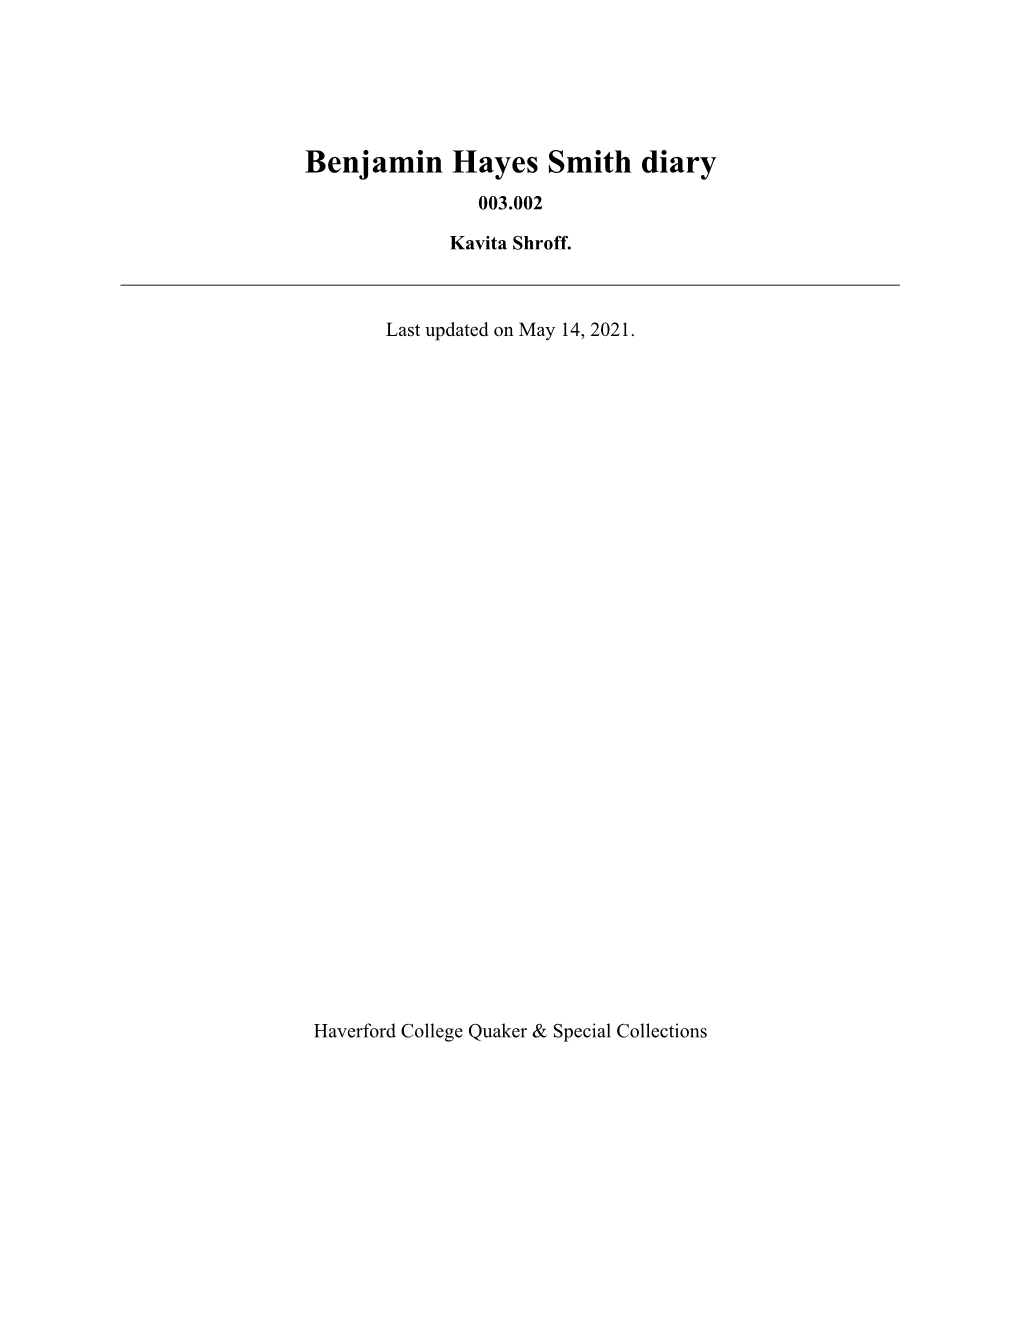 Benjamin Hayes Smith Diary 003.002 Kavita Shroff